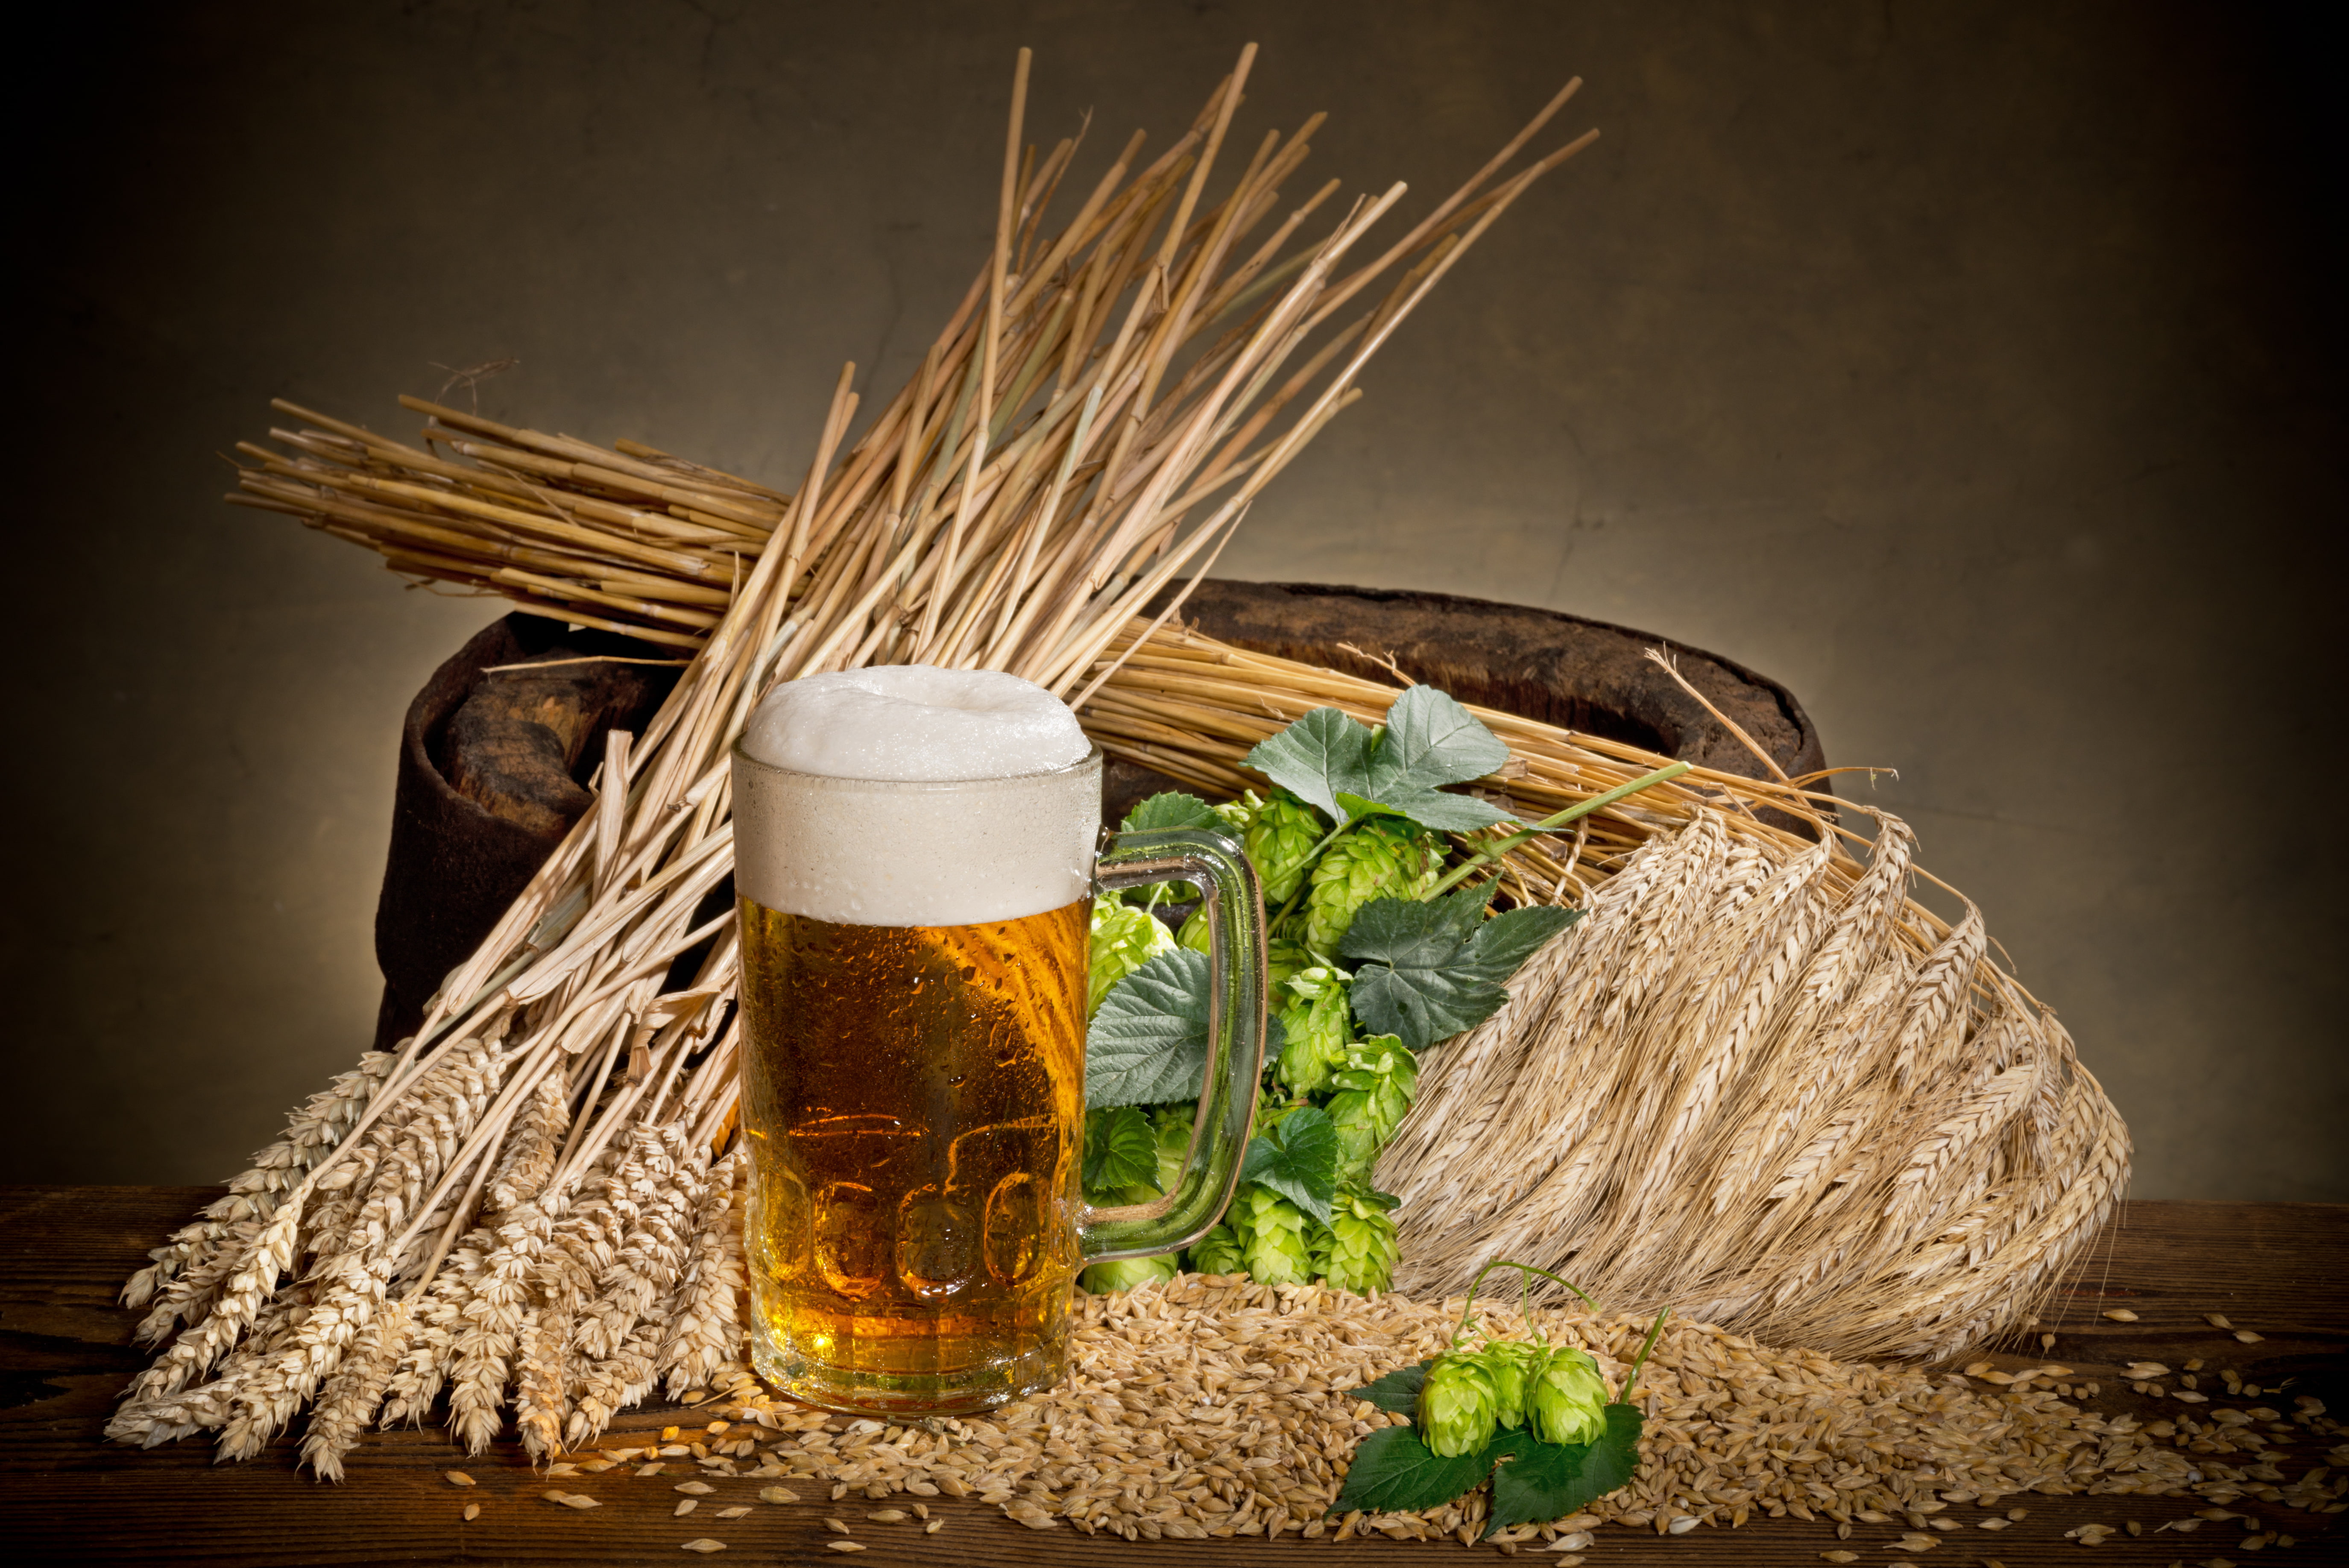 malt beer glass, millet, hops